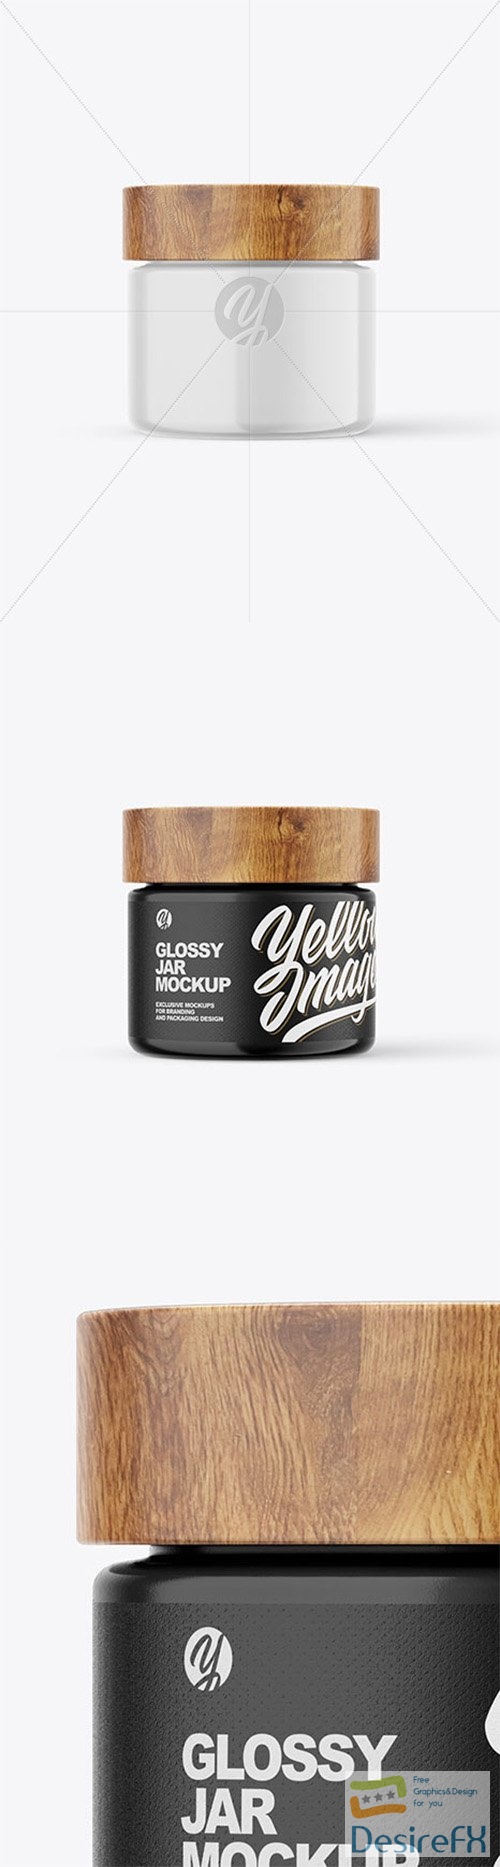 60ml Glossy Jar W/ Wooden Lid Mockup 80016 TIF